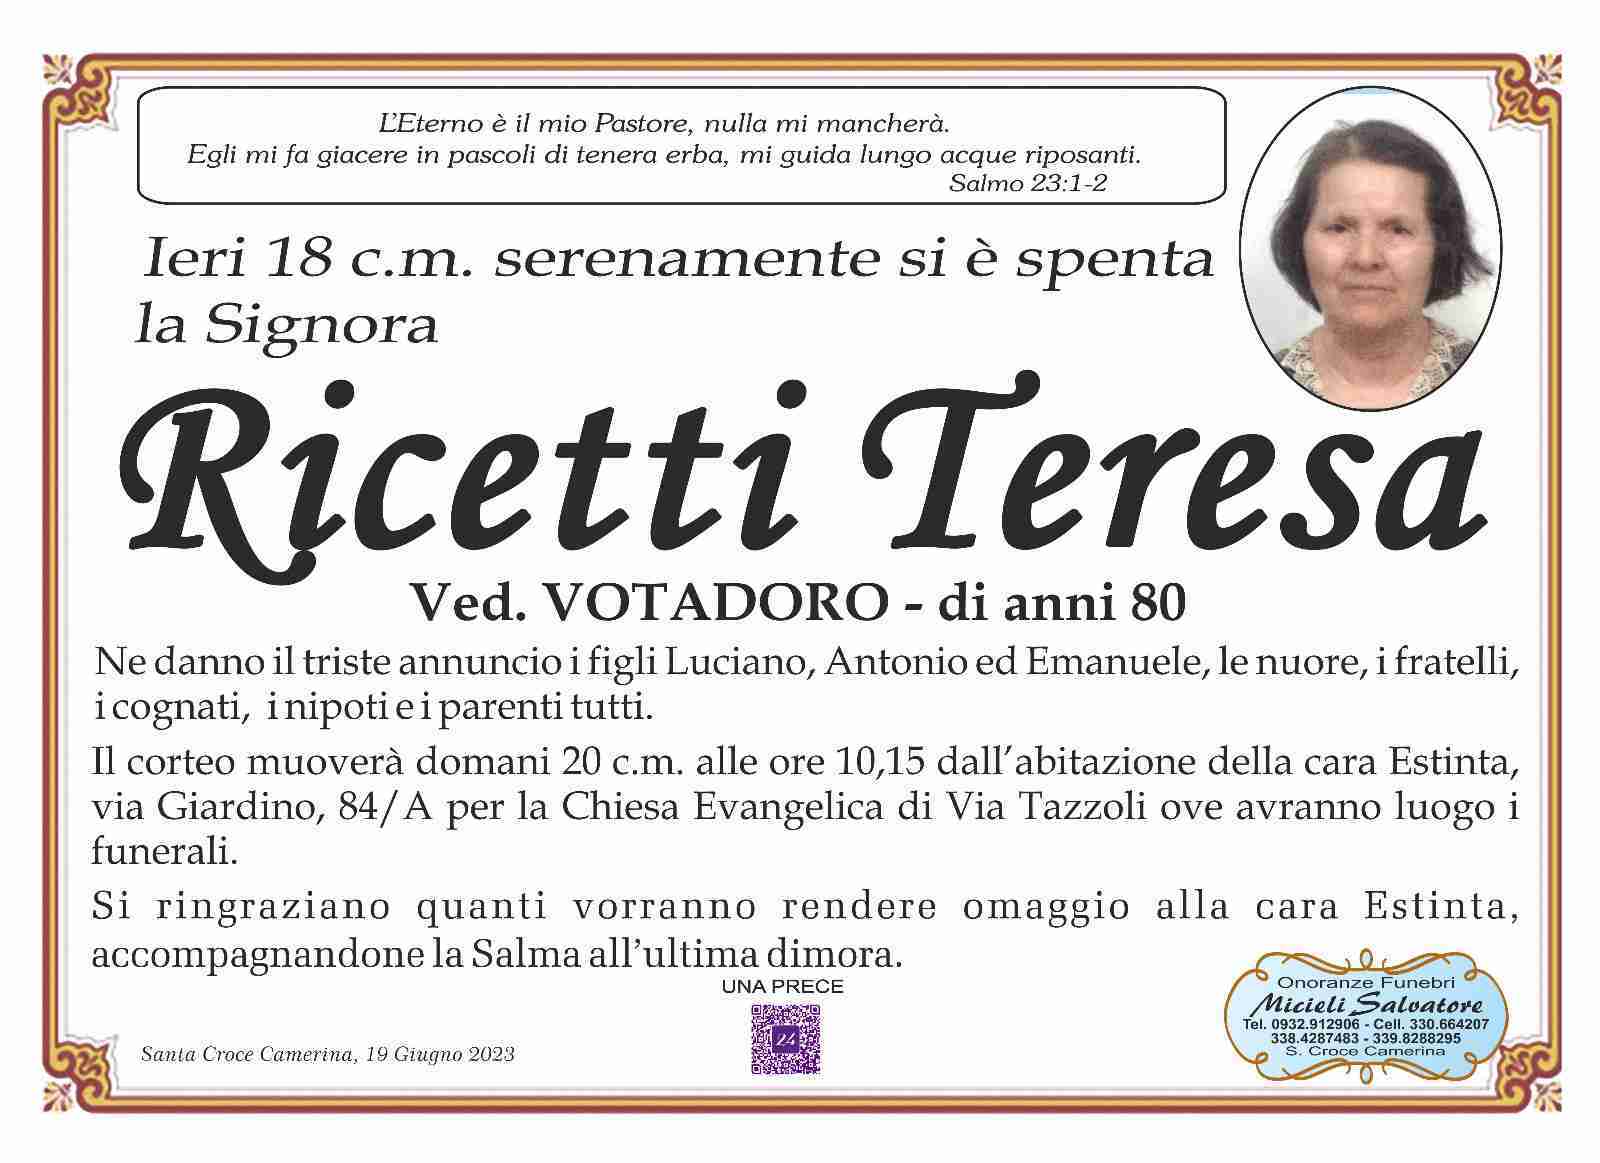 Teresa Ricetti